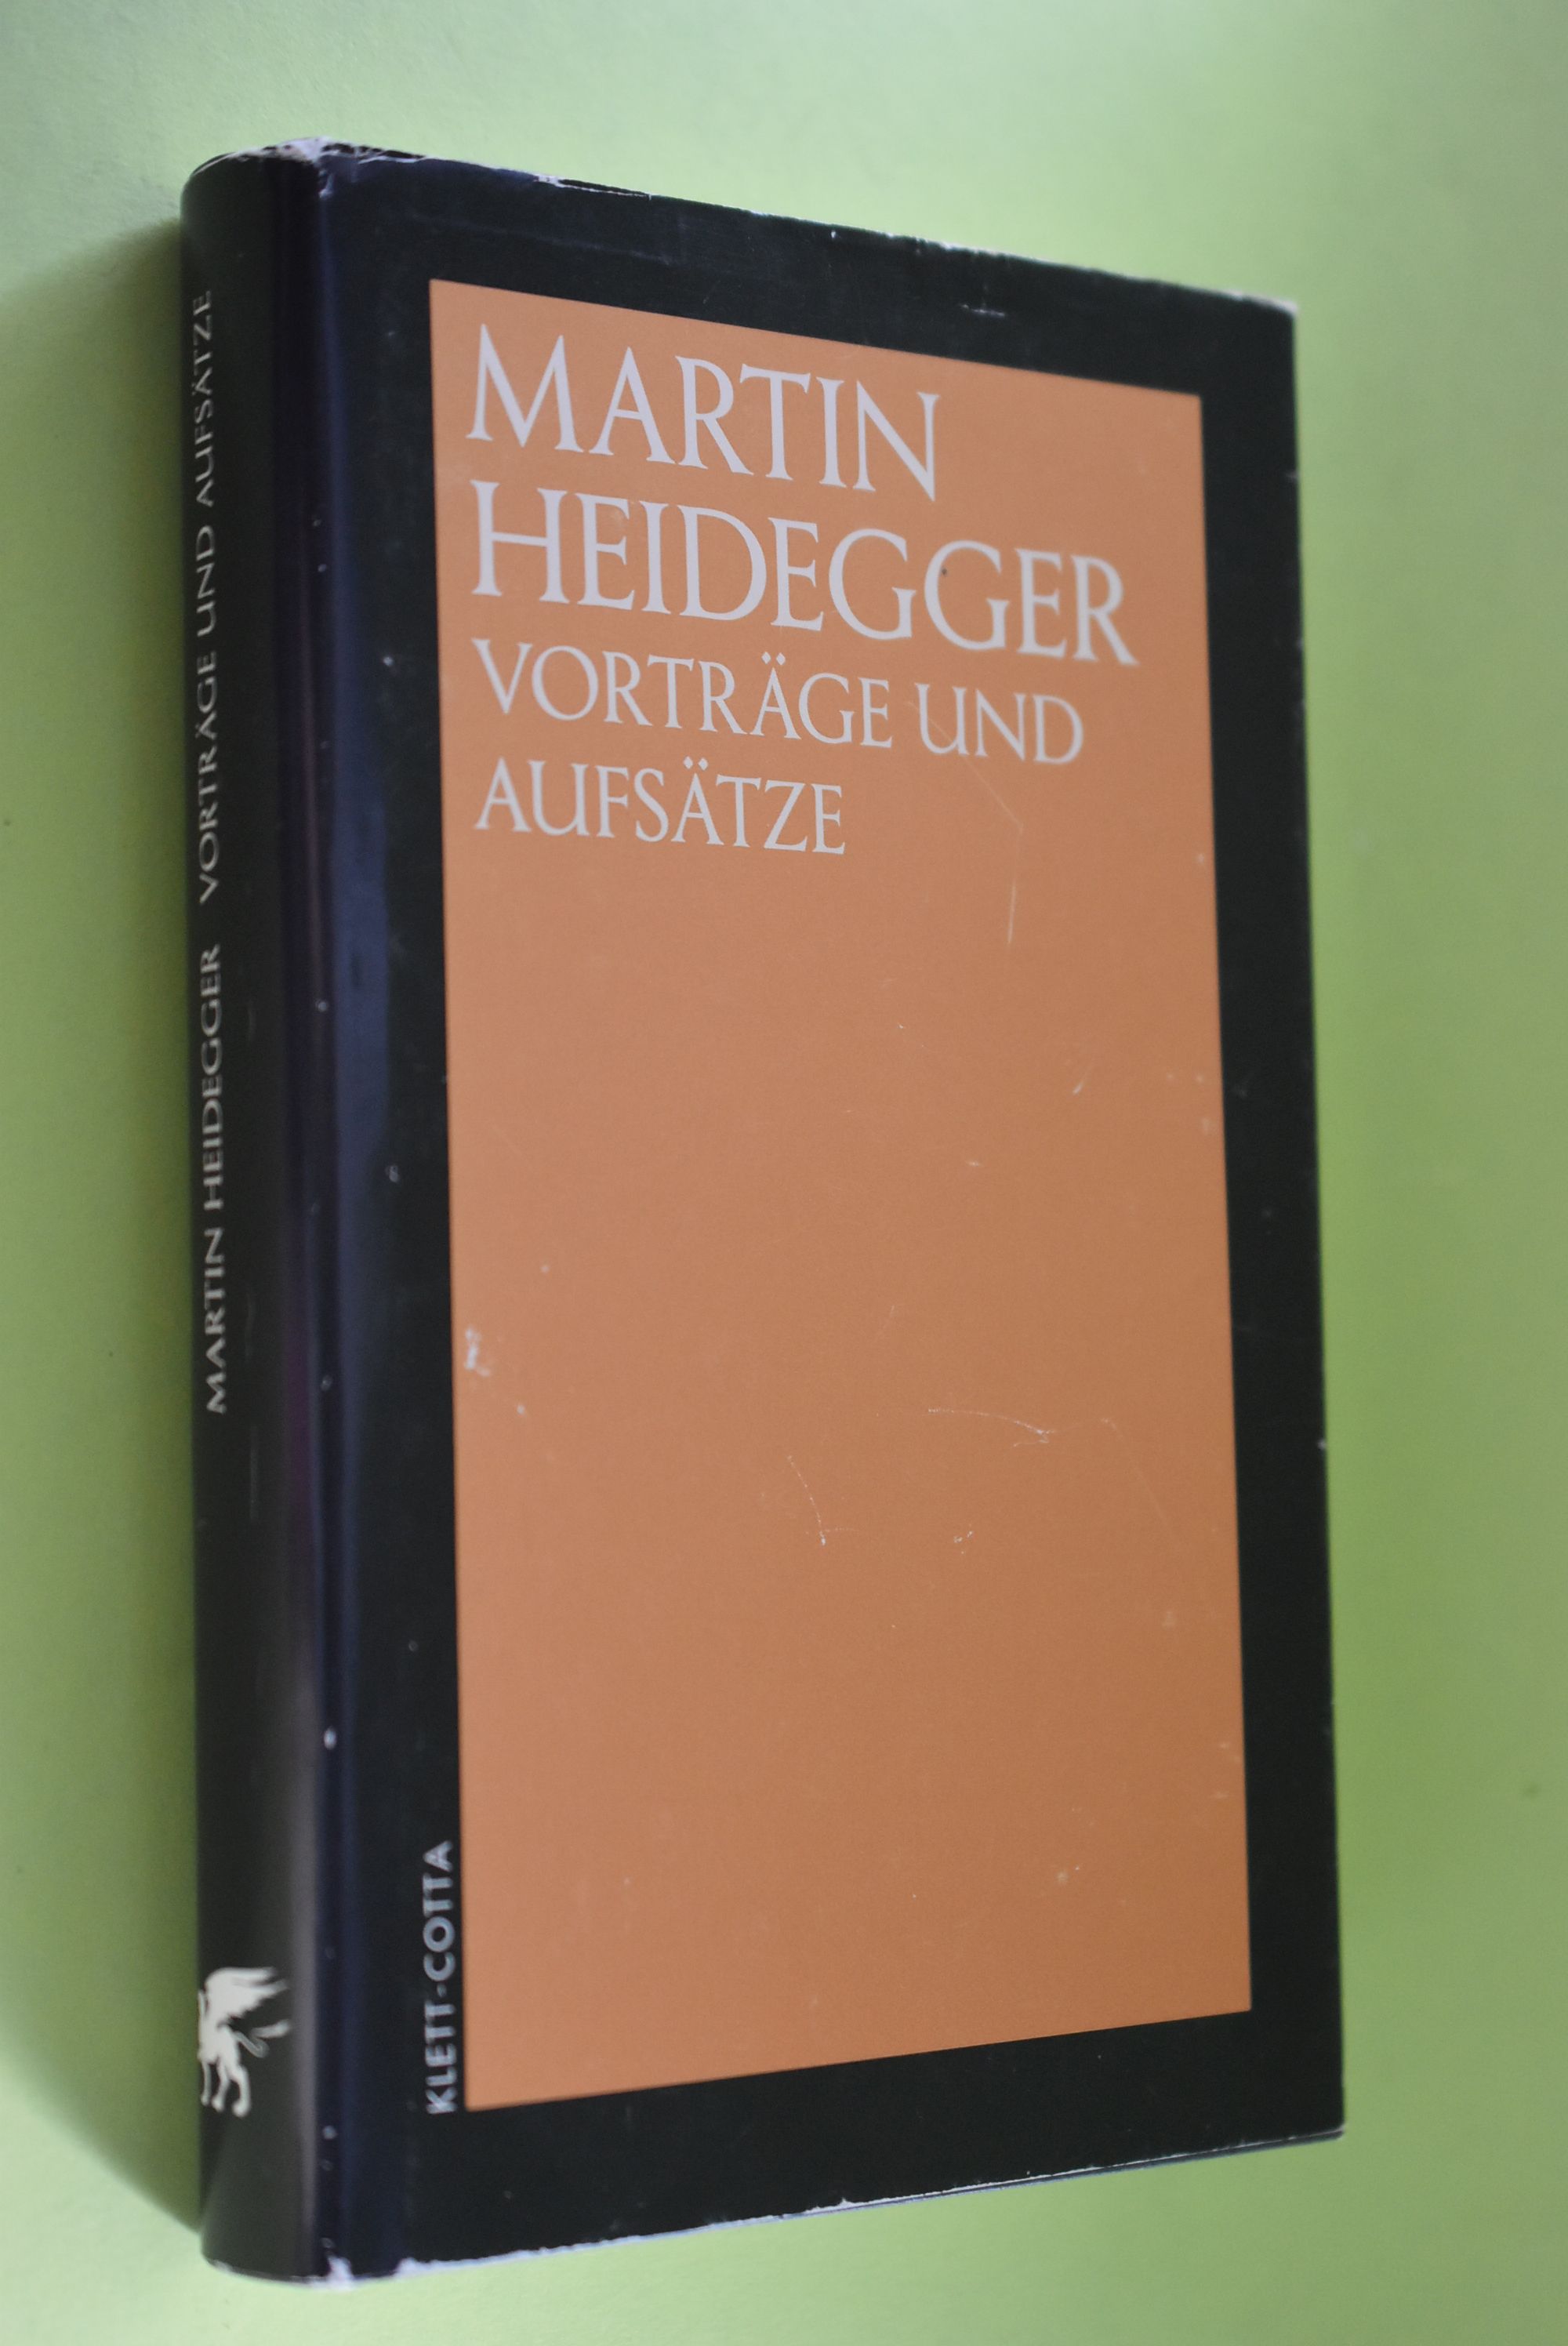 Vorträge und Aufsätze. - Heidegger, Martin